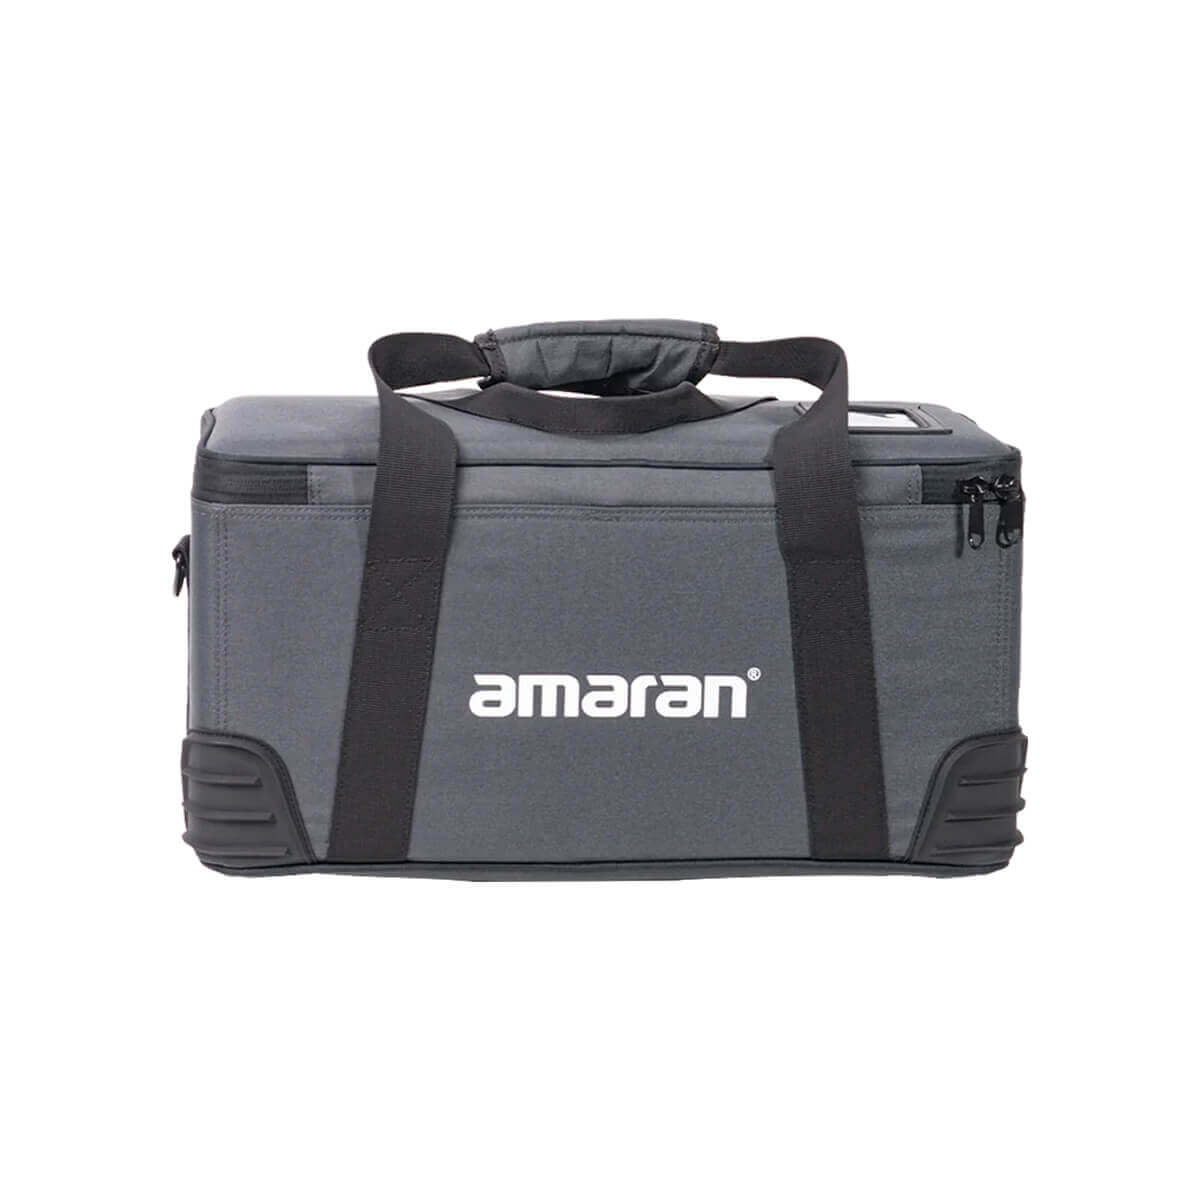 amaran 150c & 300c Carrying Case